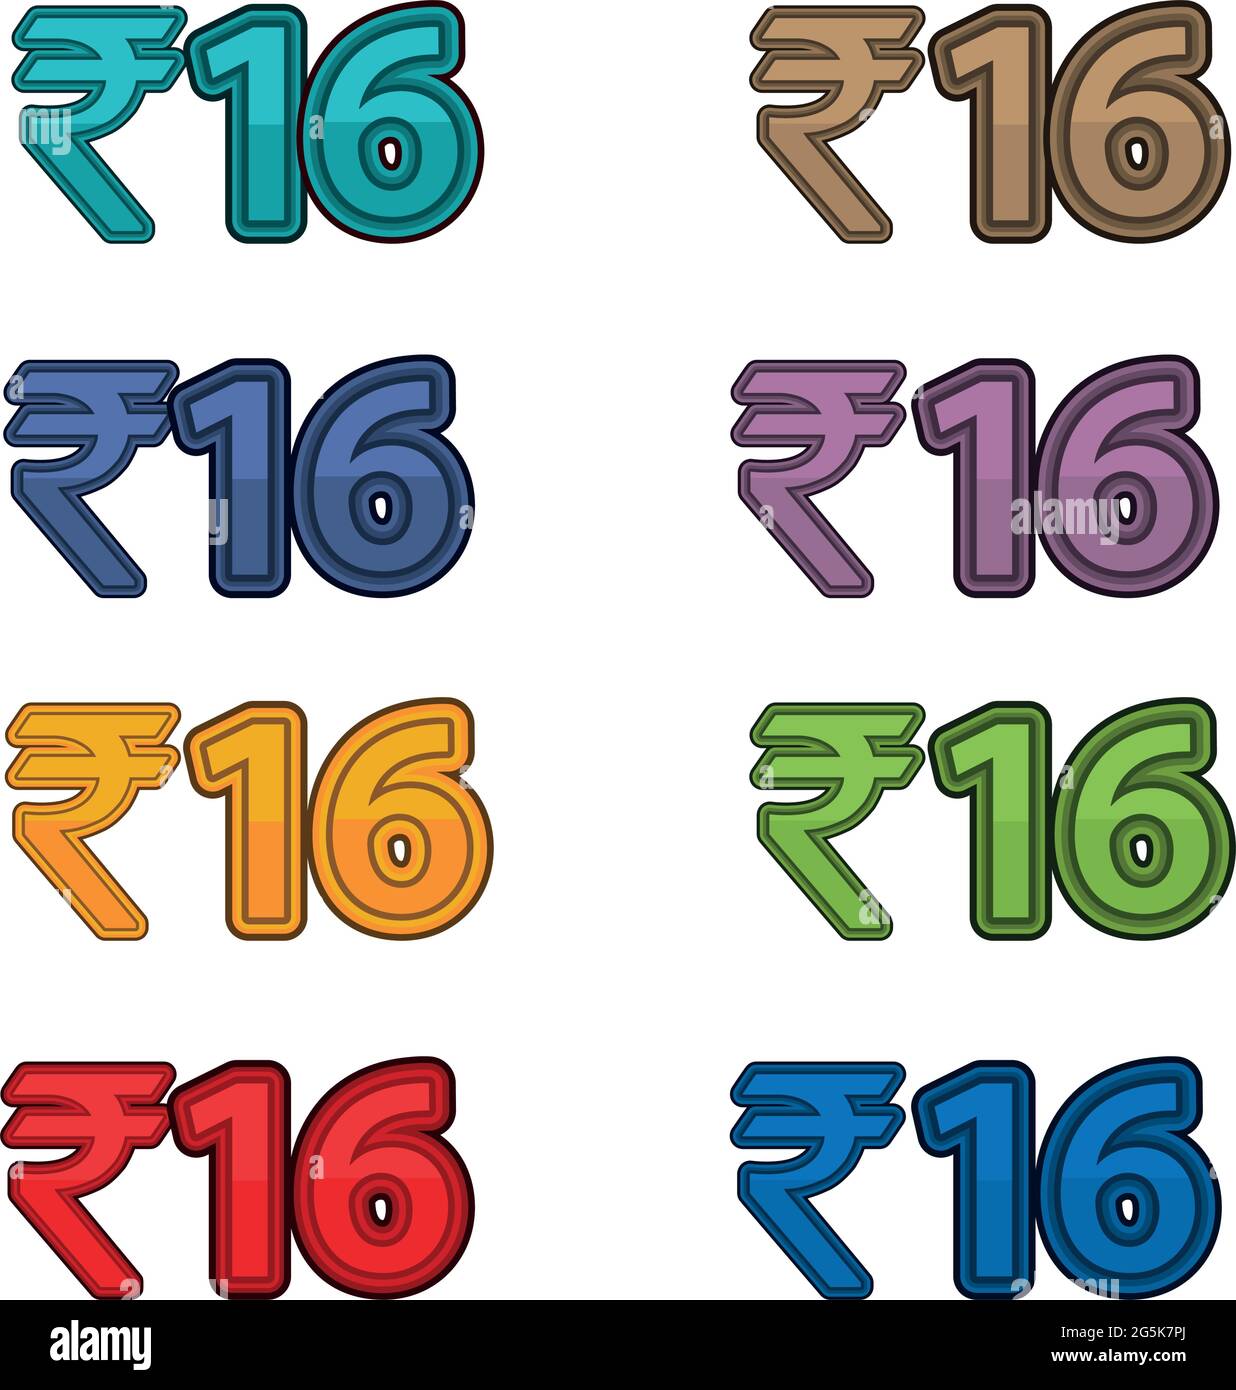 Illustration Vektor des Preises 16 Rupie, indische Währung Stock Vektor